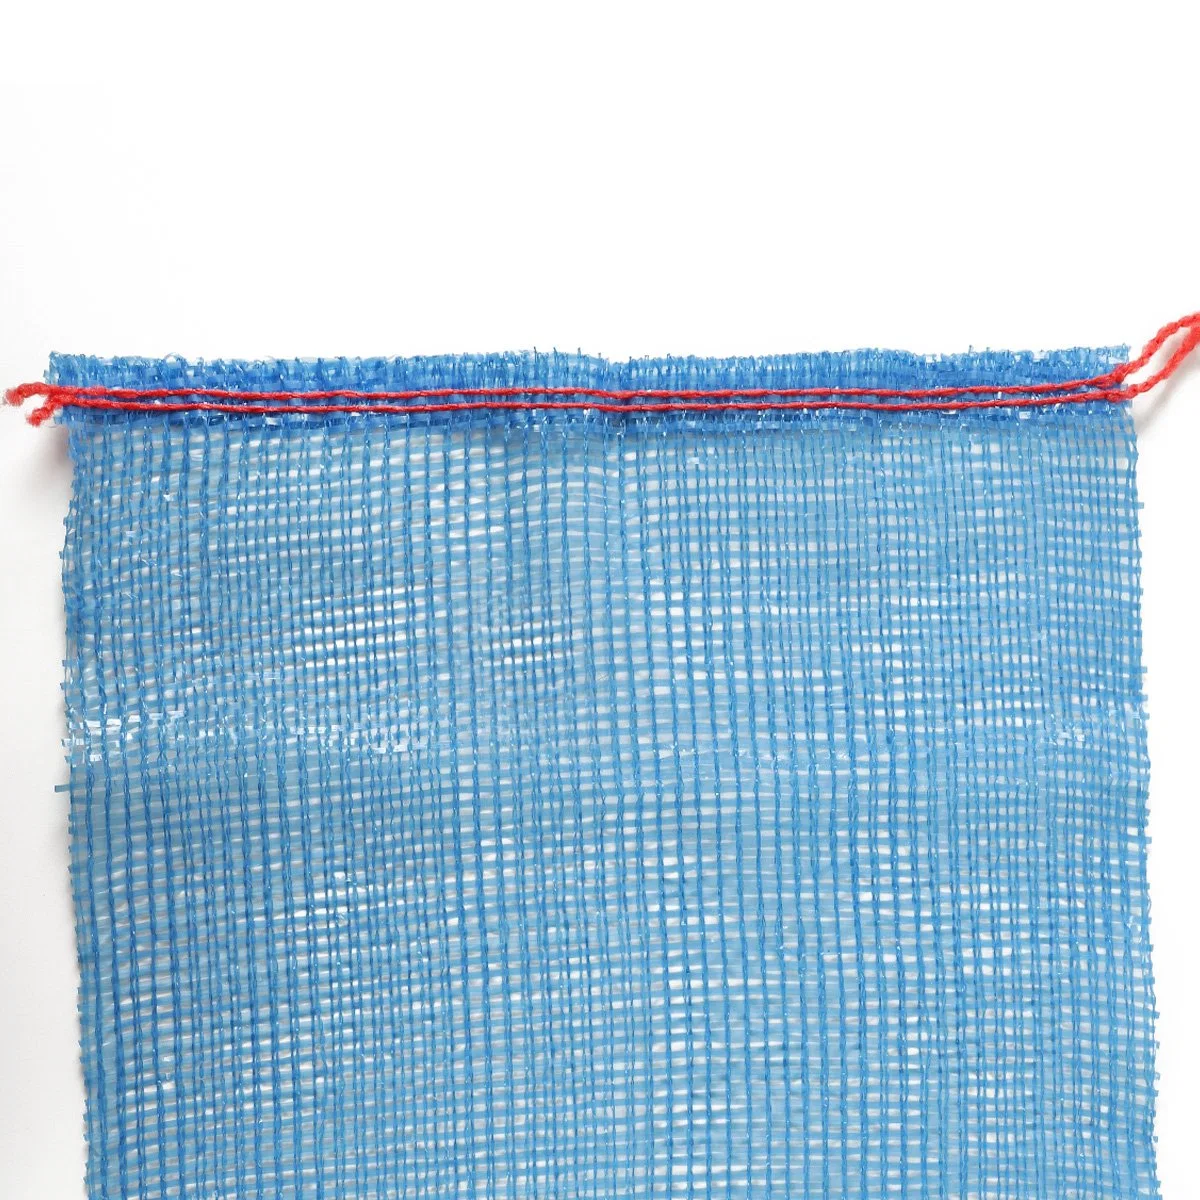 Netting Bags for Vegetables Firewood Tubular Mesh Bags